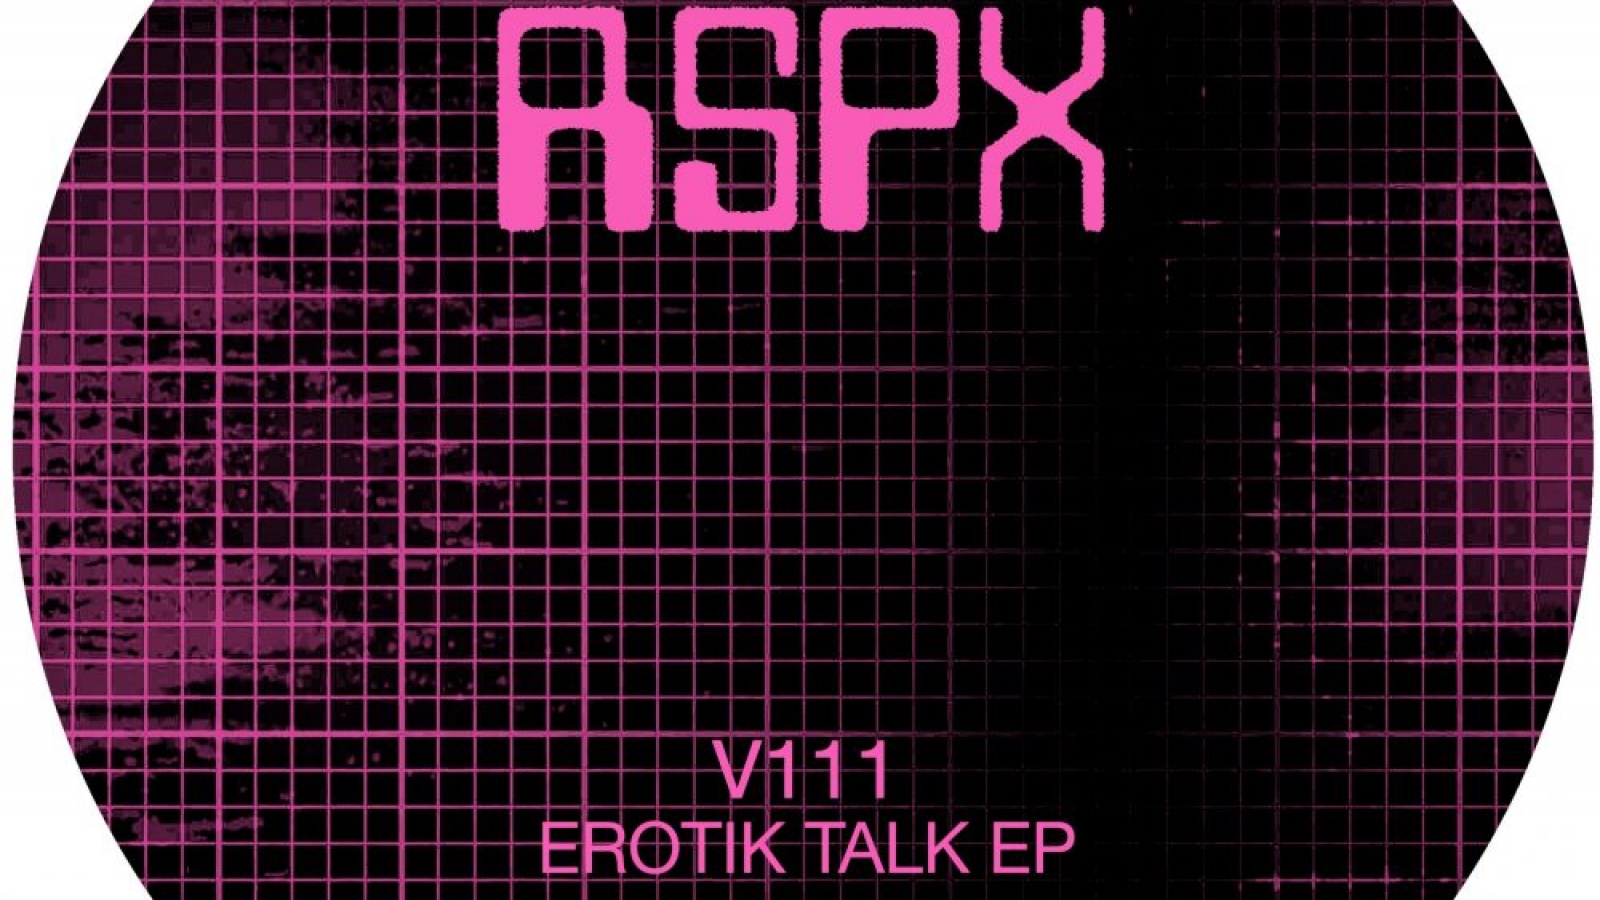 PACK SHOT - V111 - Erotik Talk EP - Rekids Special Projects